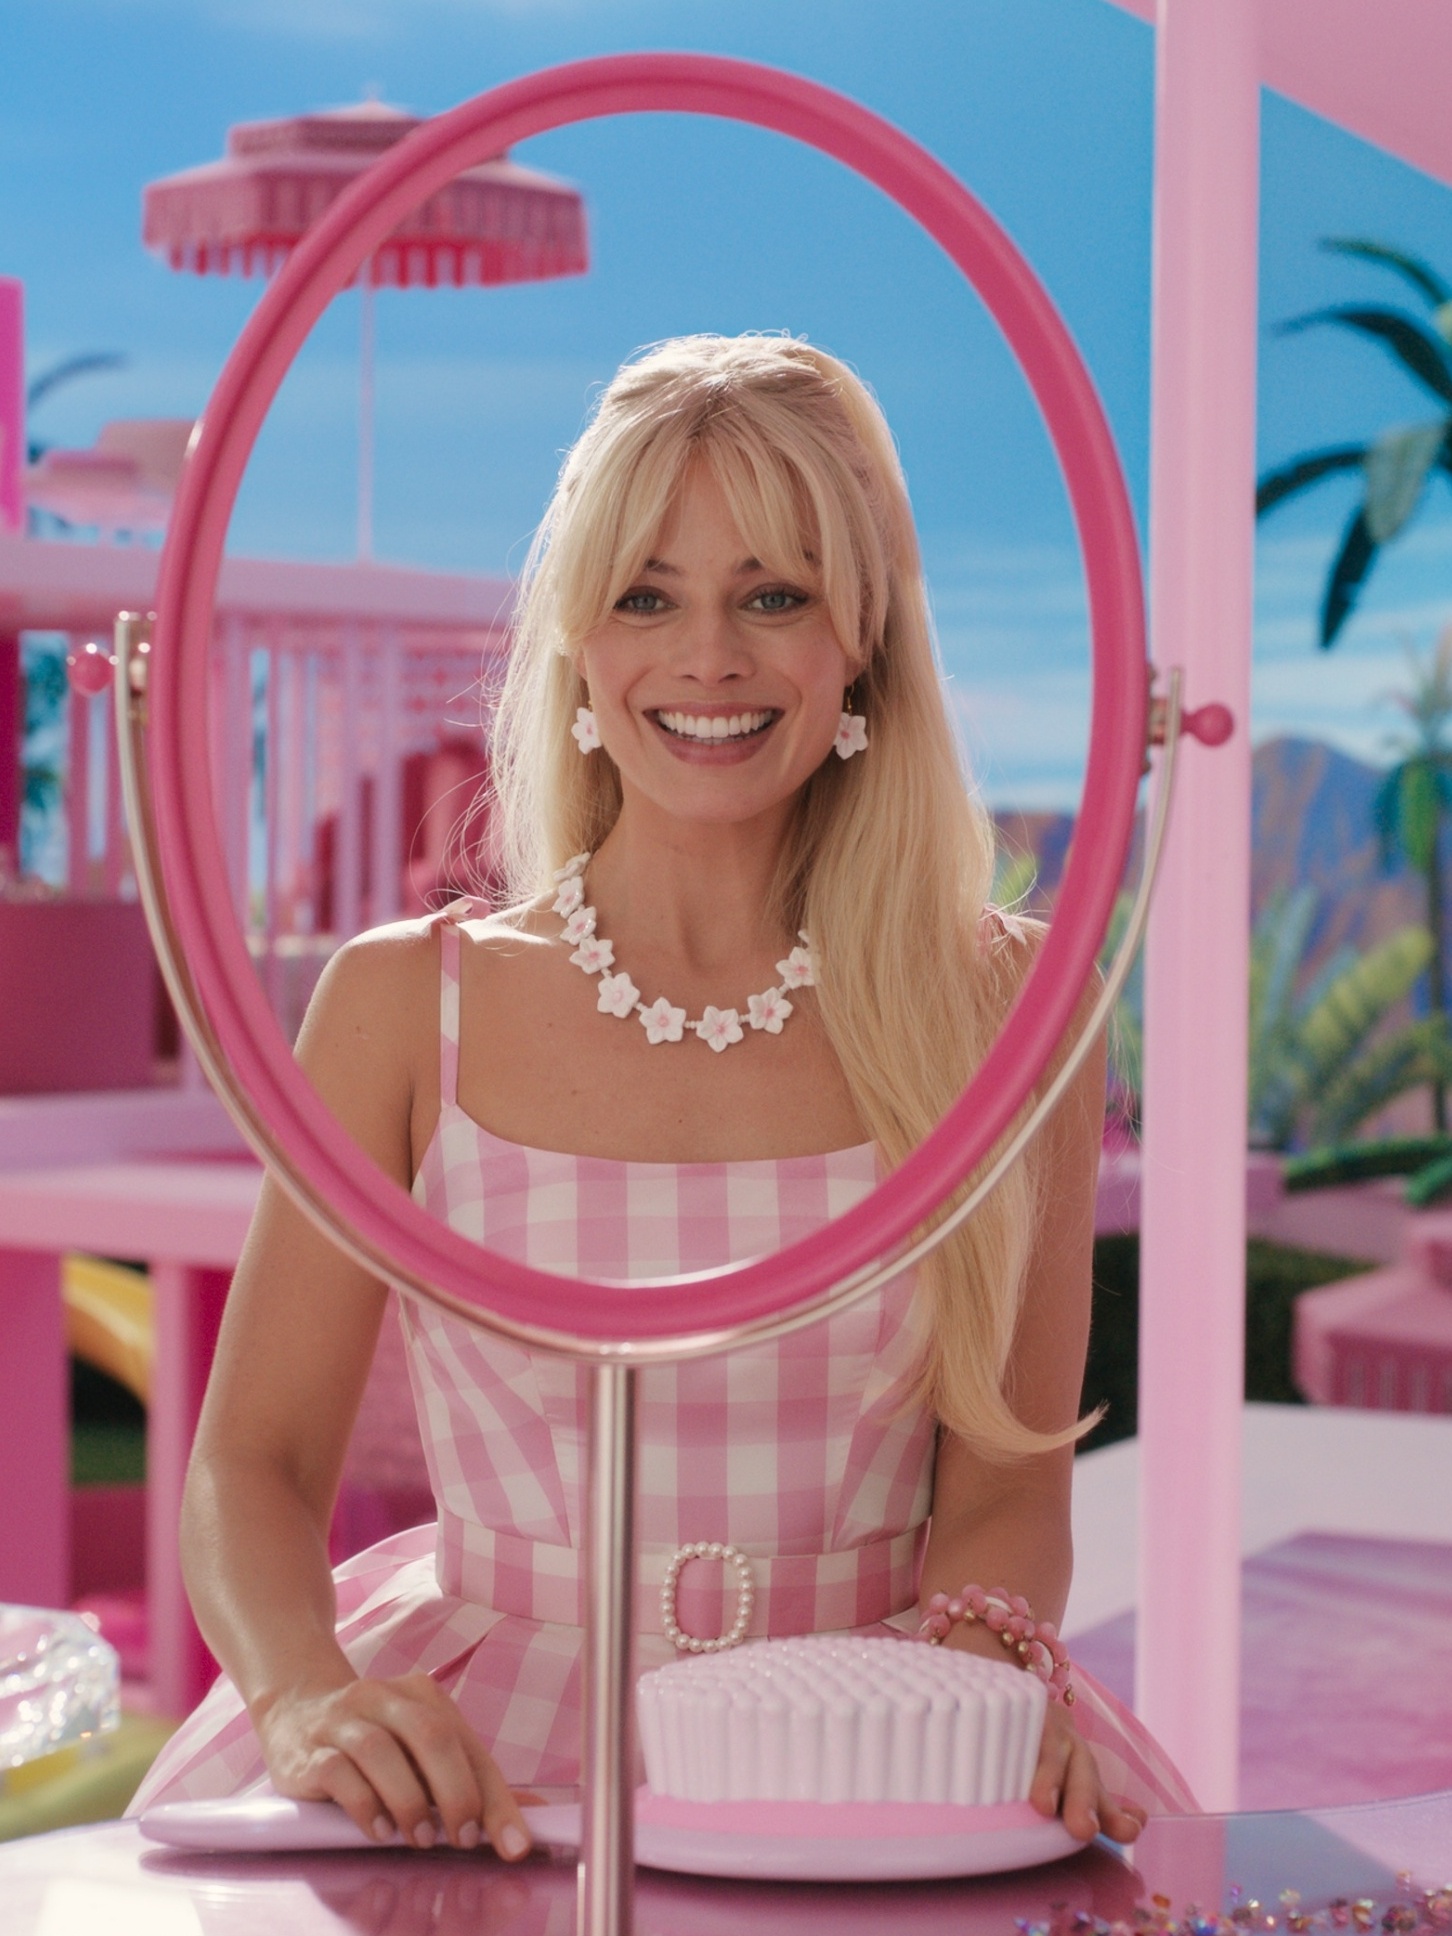 Ator de 'Barbie' revela vida pessoal disputada em nova fase